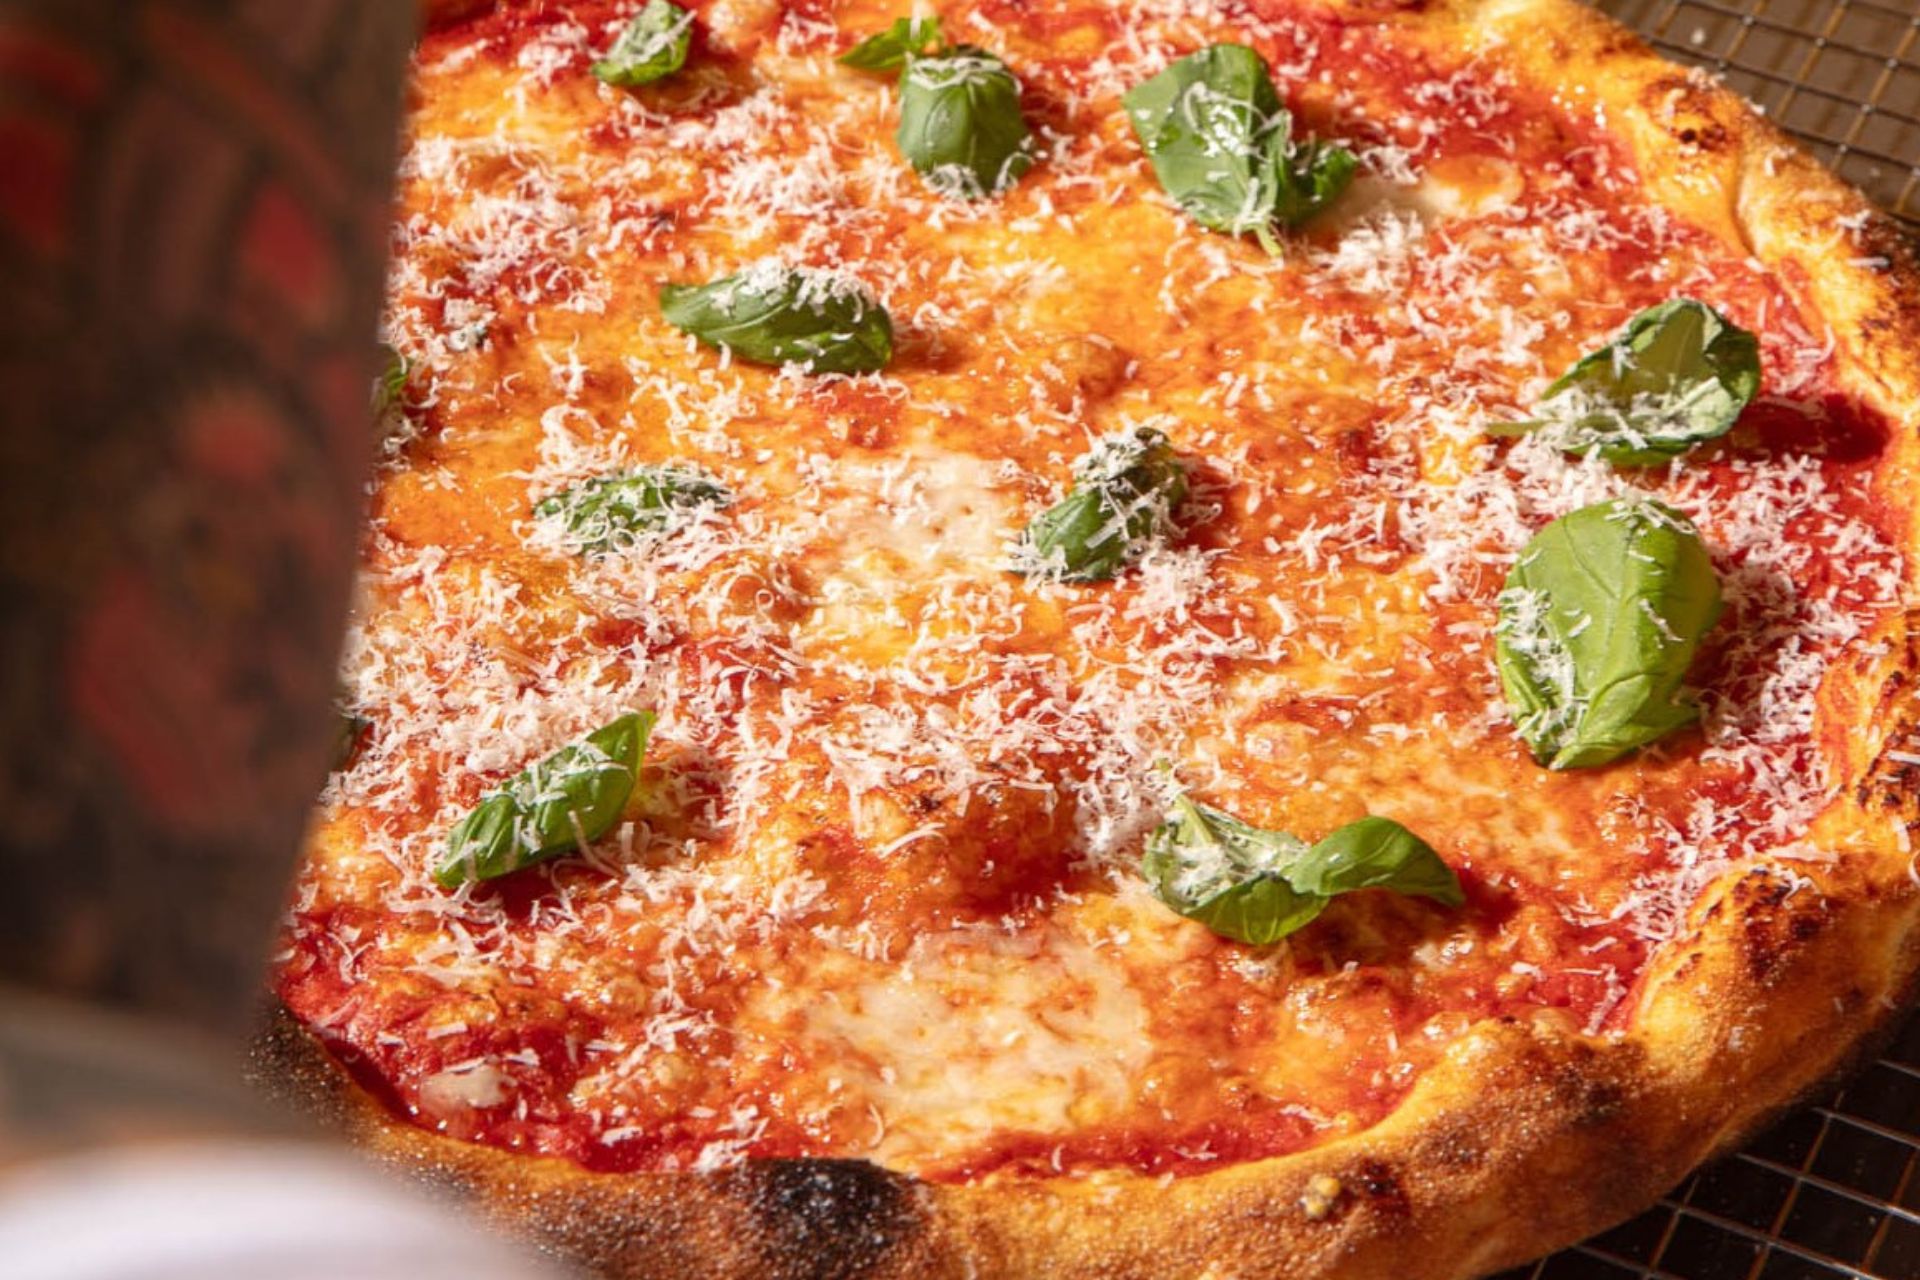 Tomato, basil and mozzarella pizza